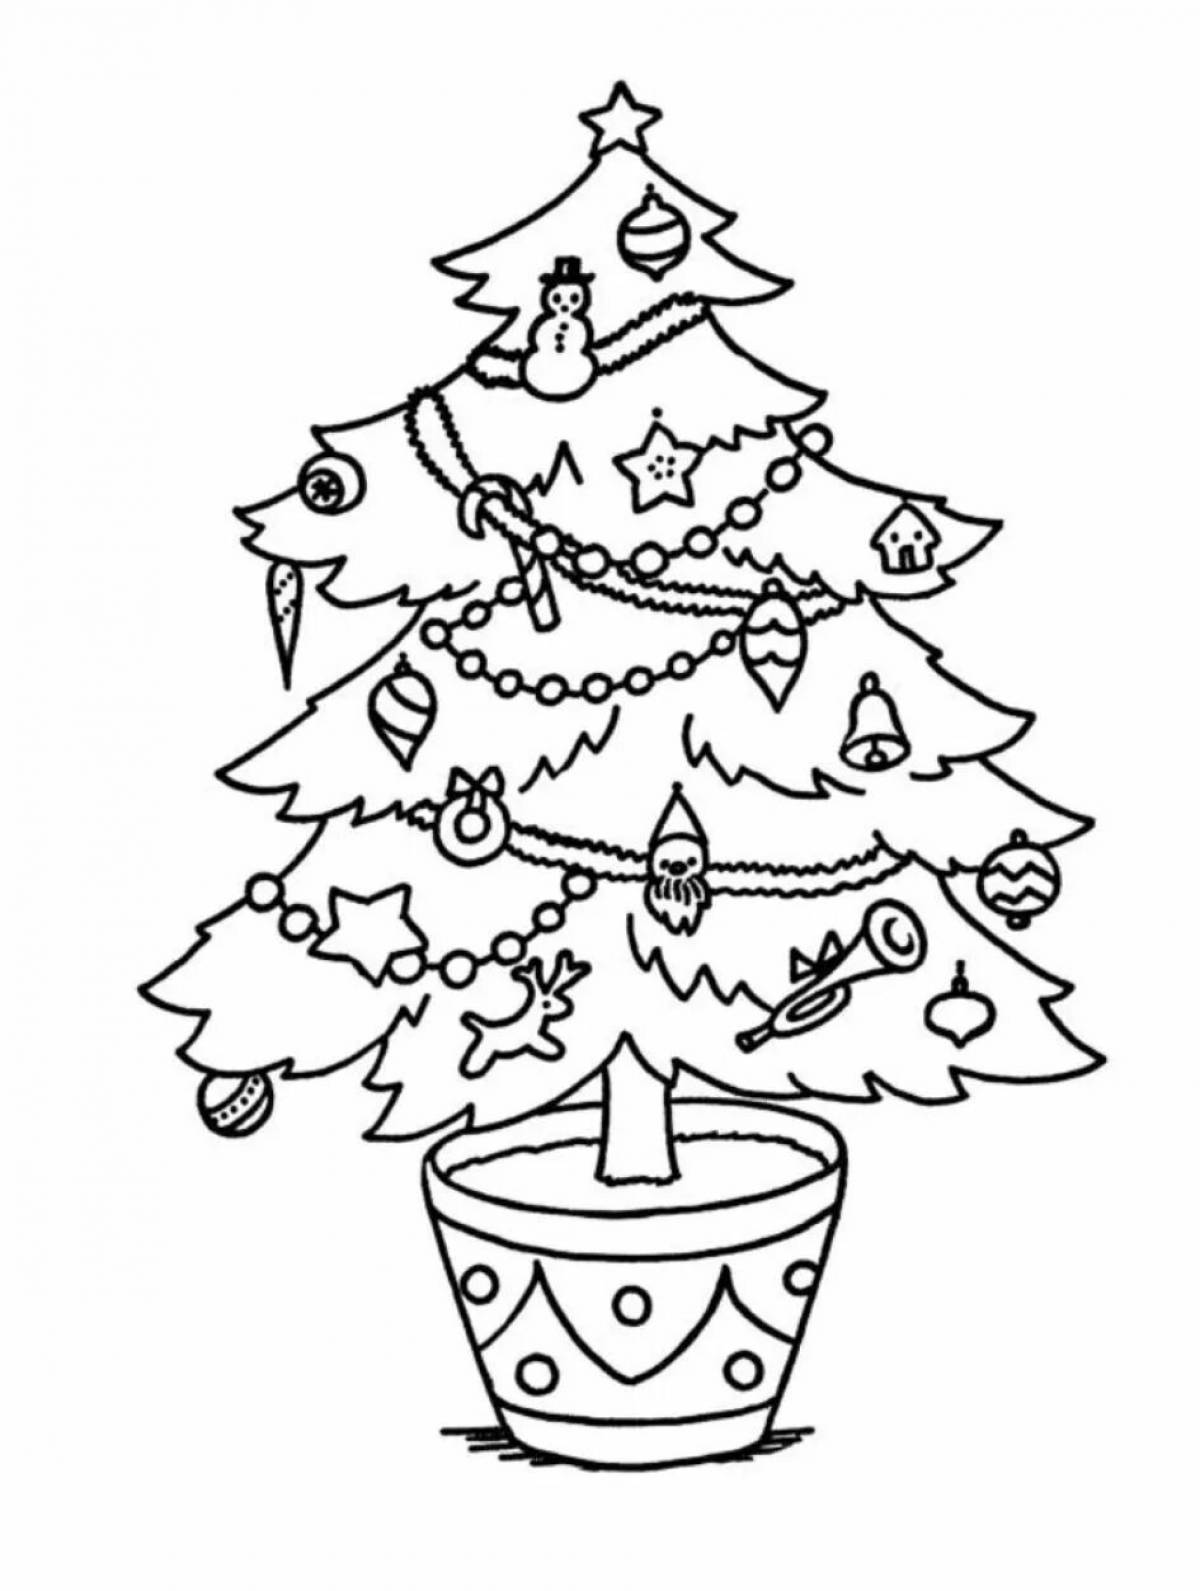 Christmas tree drawing for kids #5